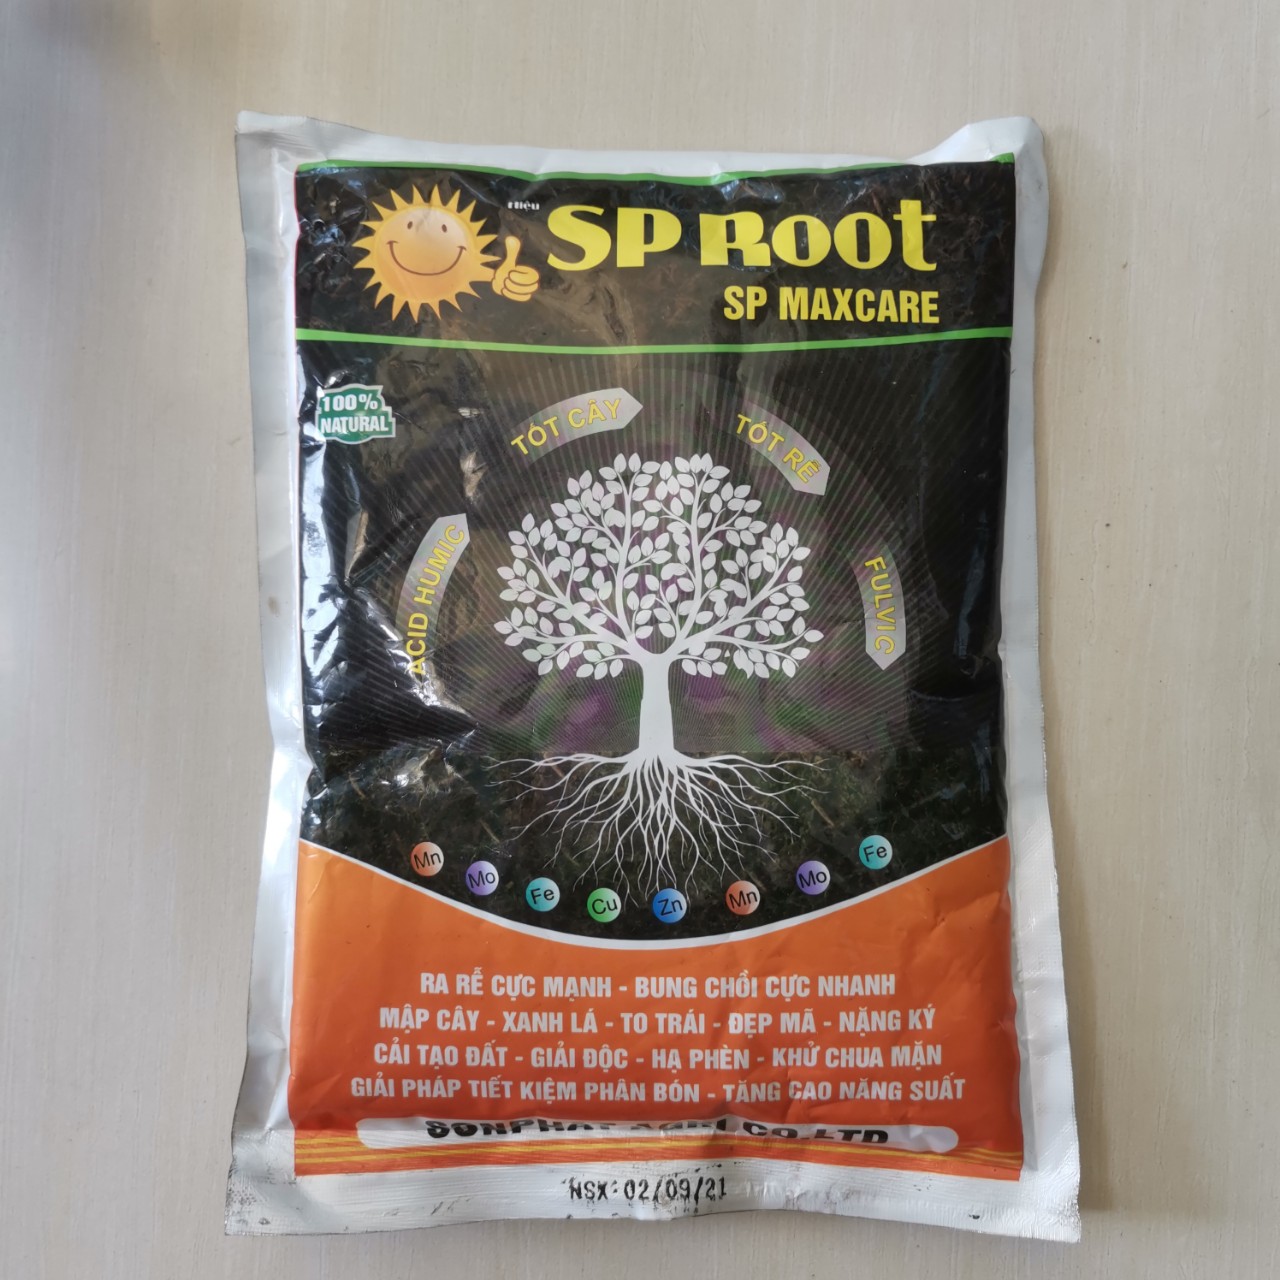 Phân bón Humic SP Root Maxcare omri plus 1kg - Ra rễ cực mạnh - Bung chồi cực nhanh - Cải tạo đất - mập cây - xanh lá